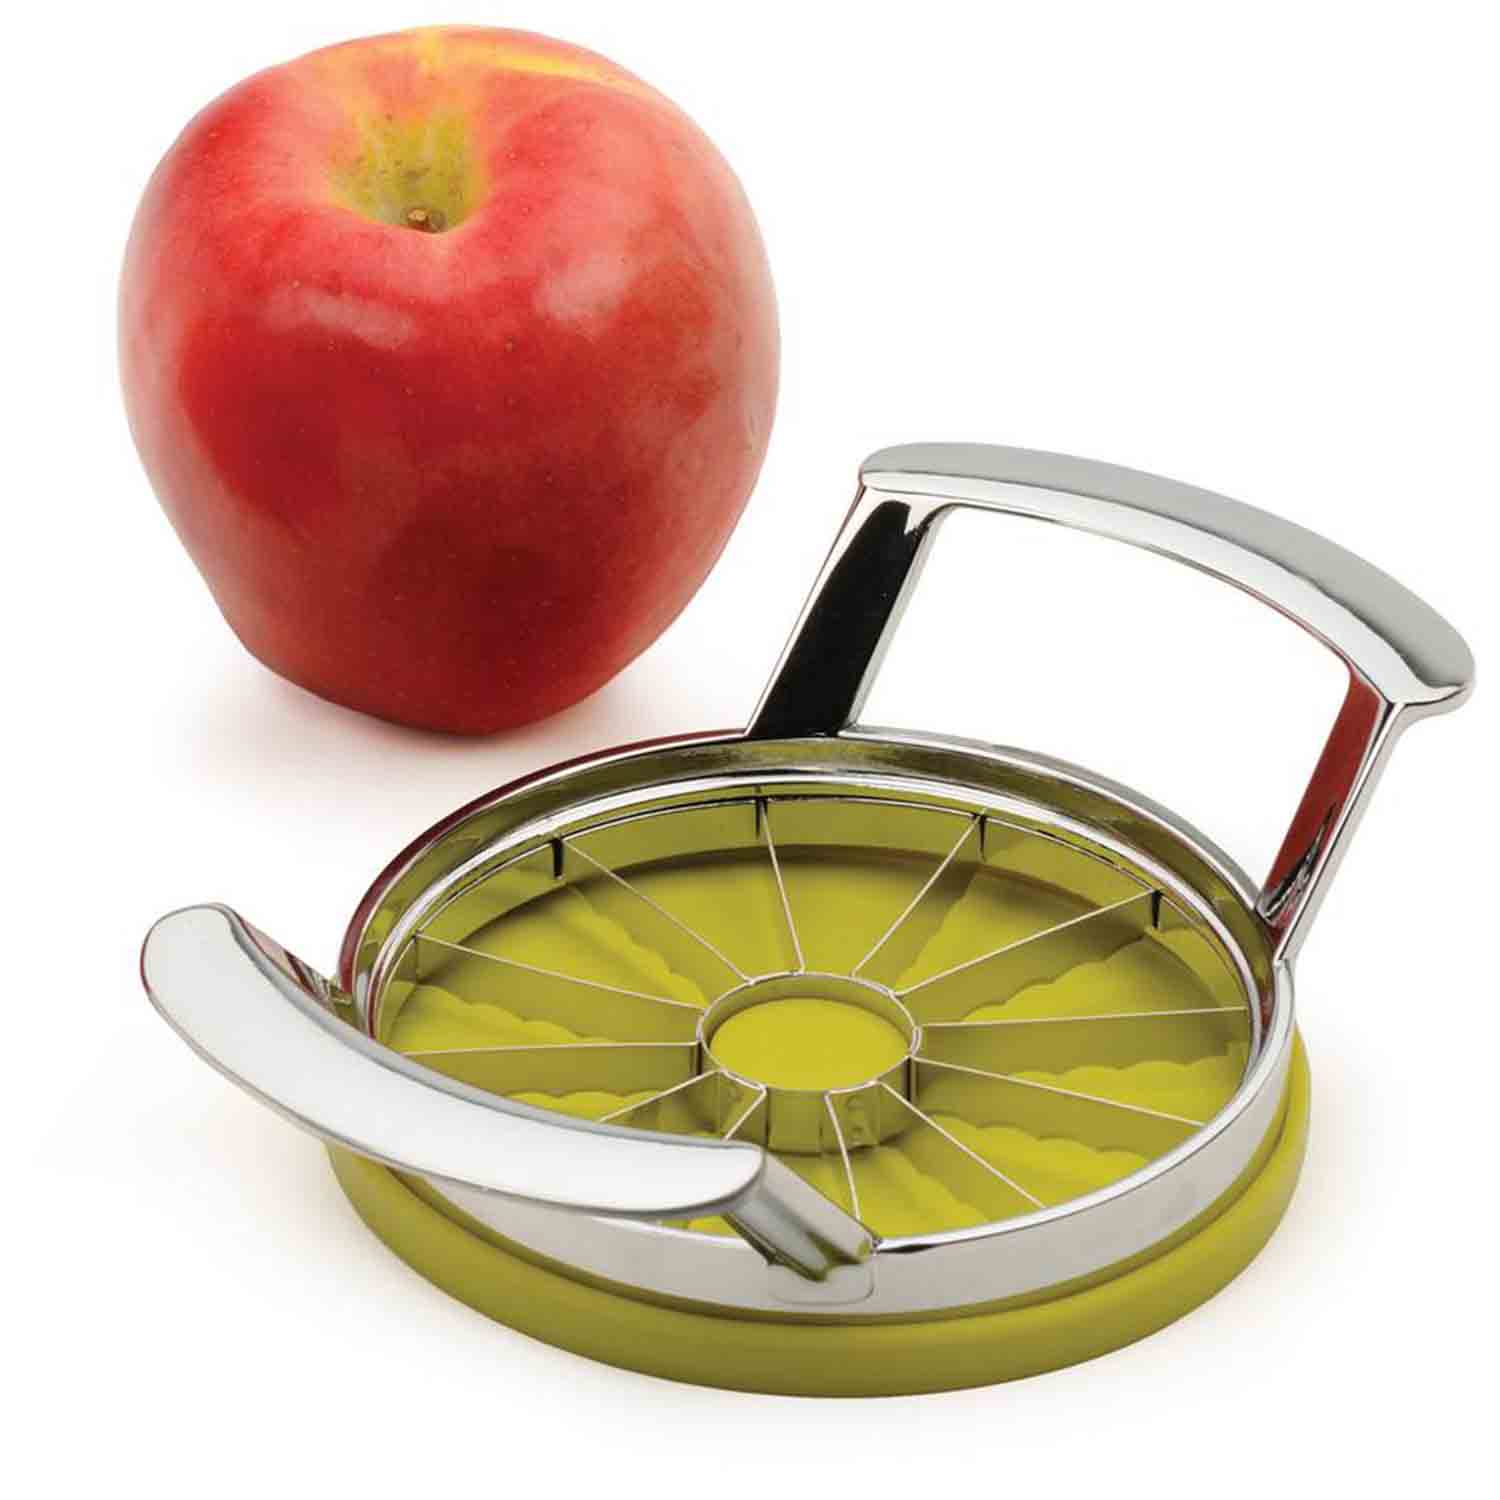 wooden apple corer slicer